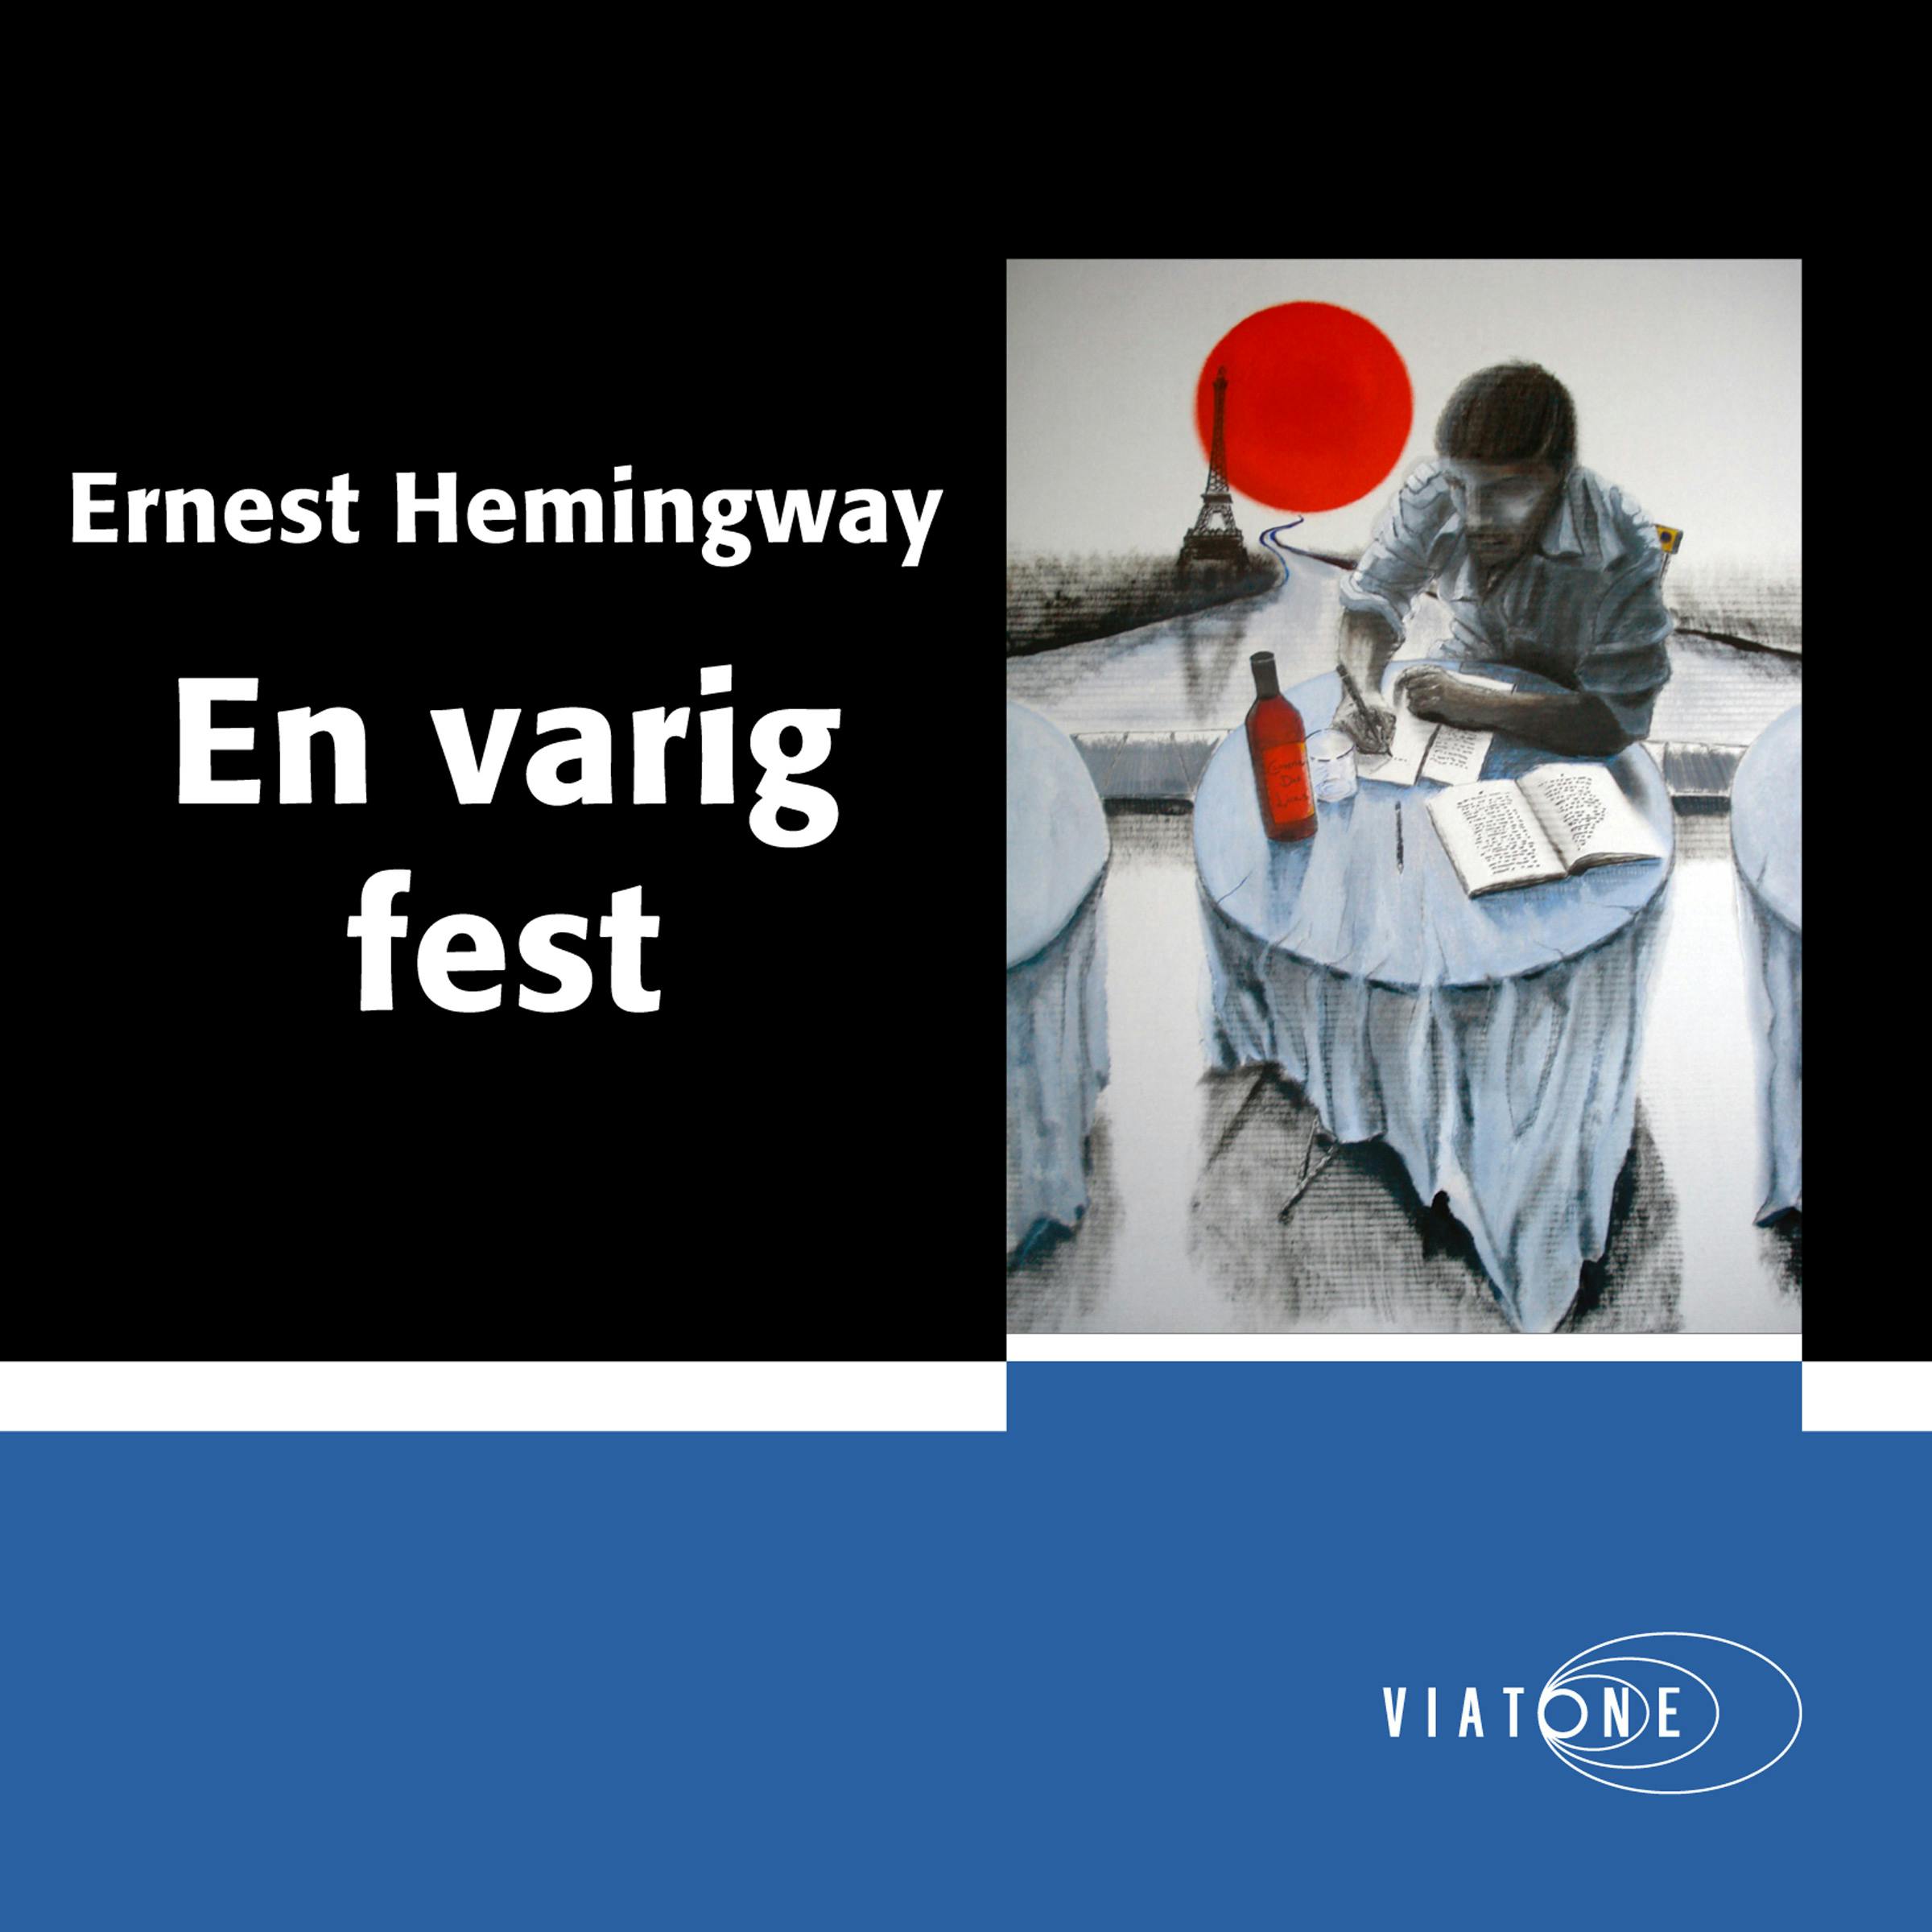 En varig fest - Ernest Hemingway